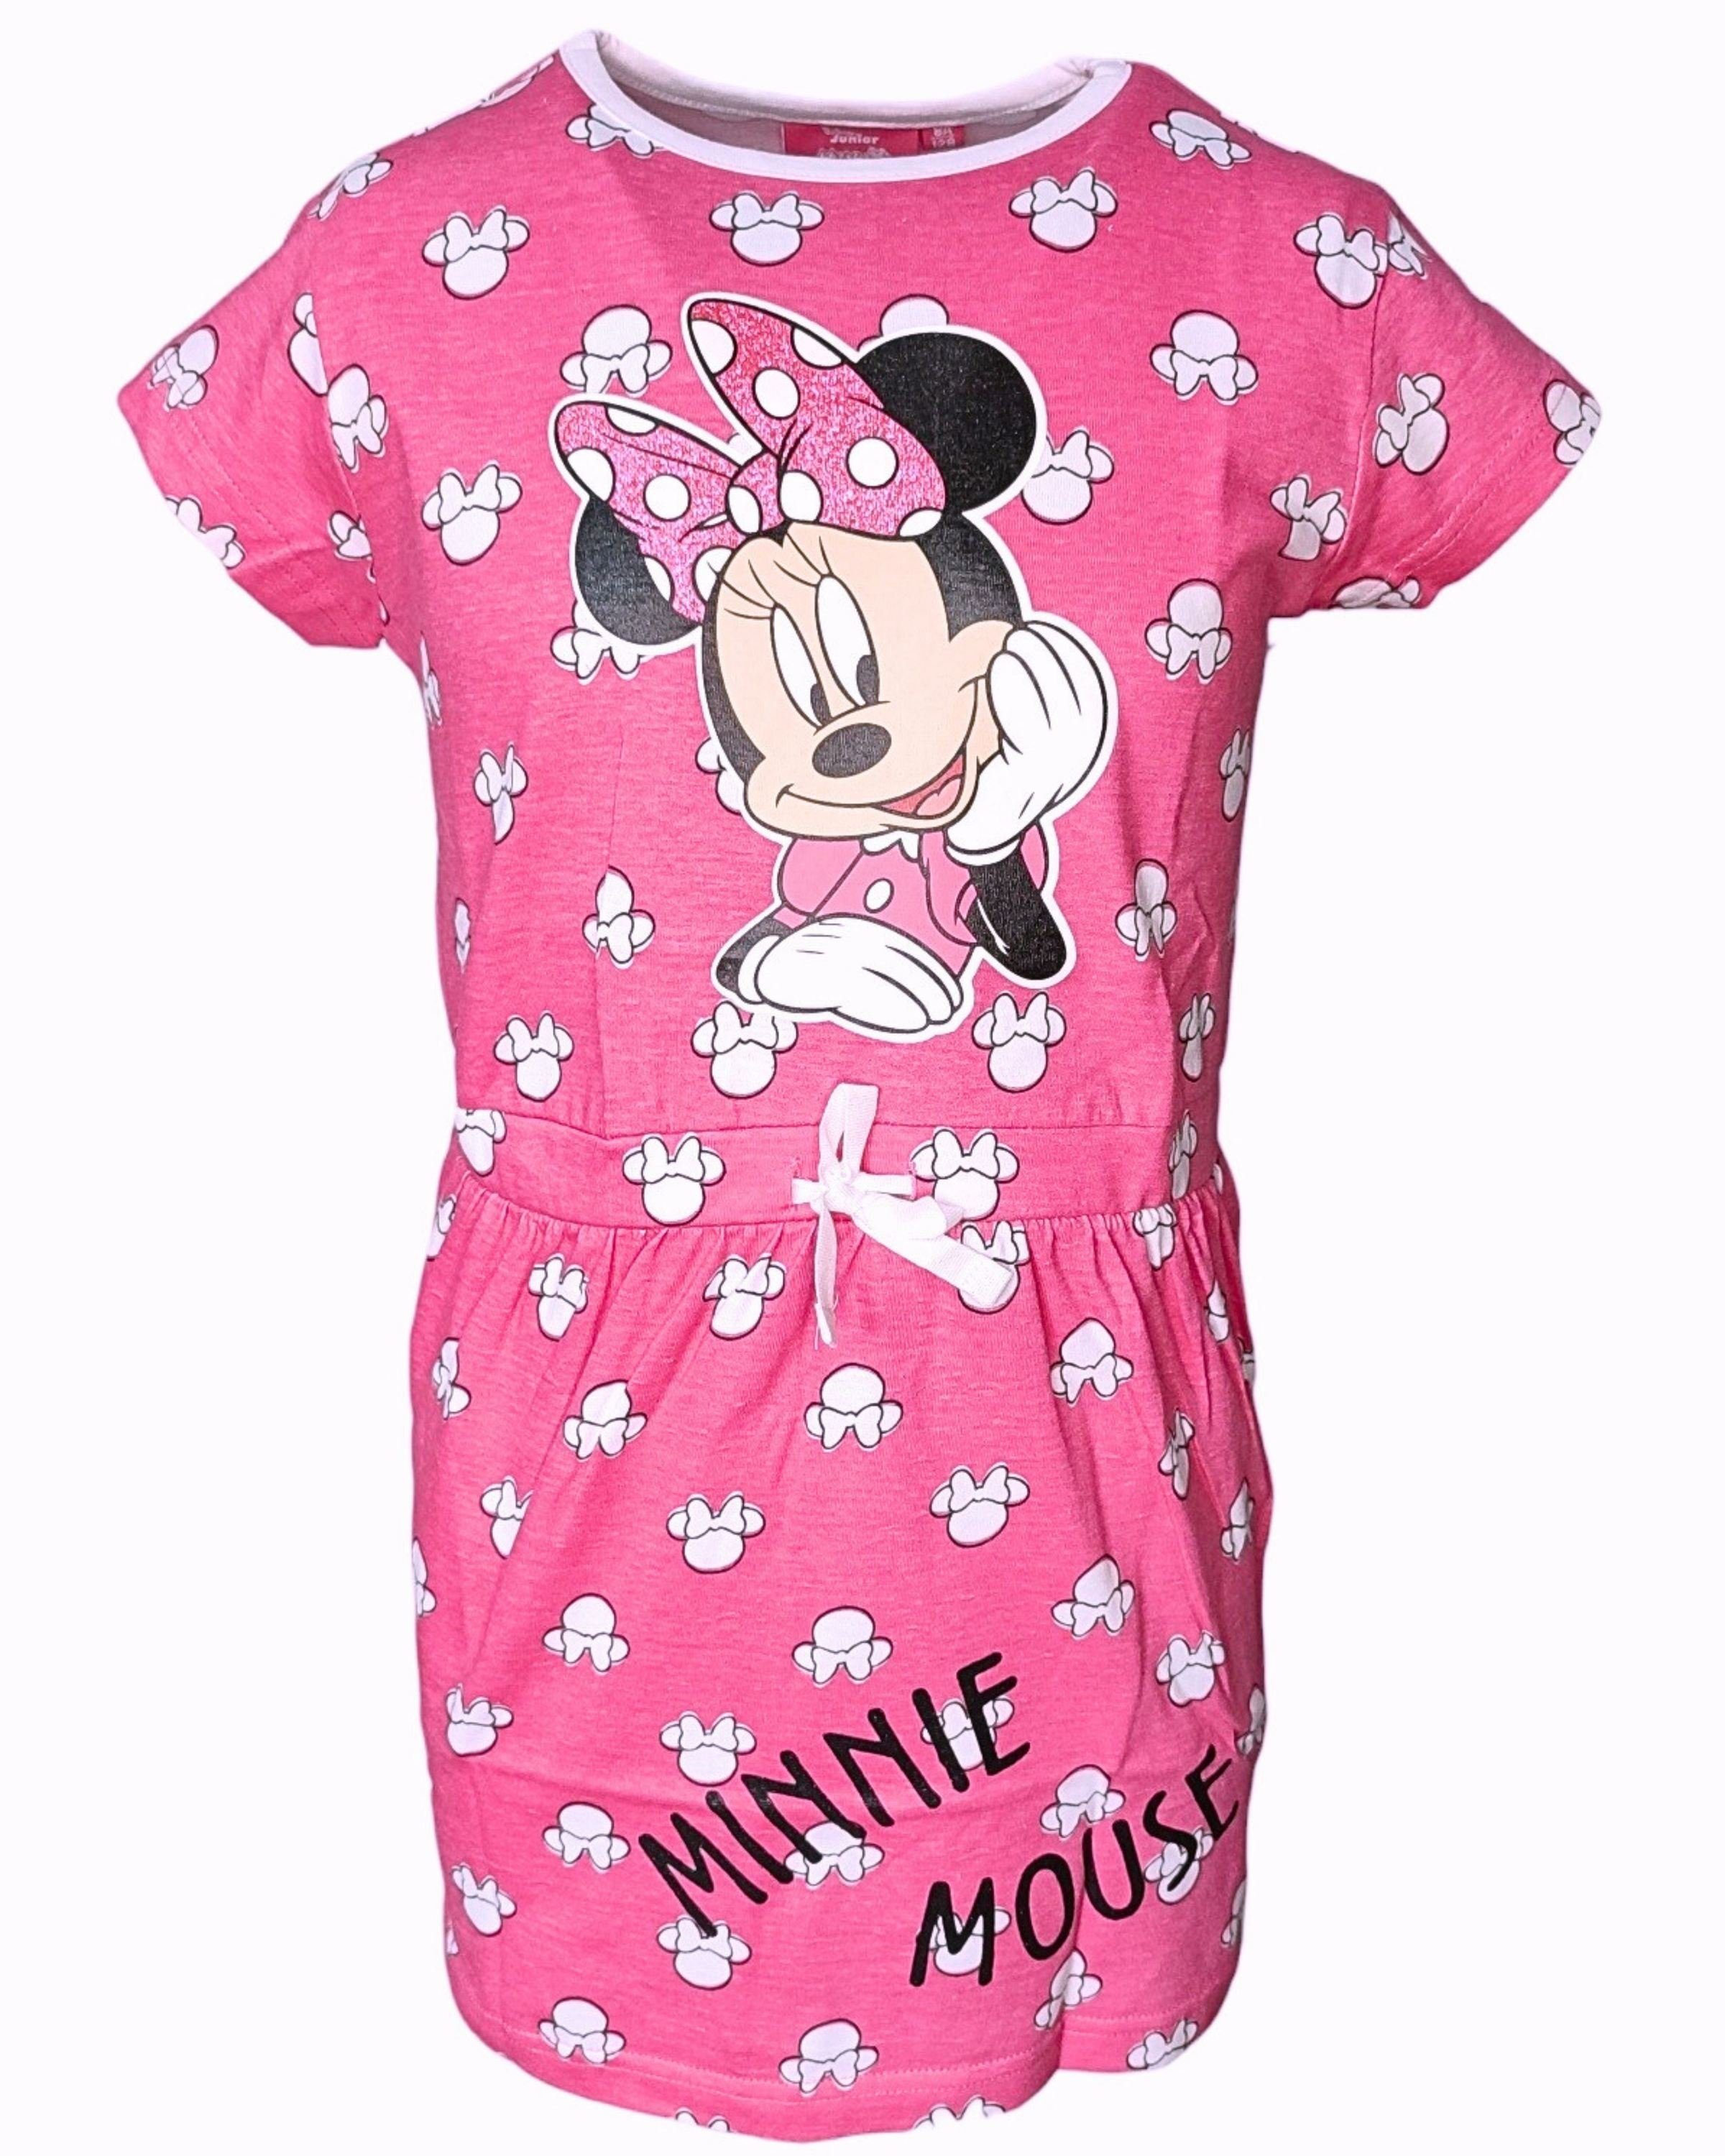 Disney Minnie Mouse Sommerkleid Minnie Maus Jerseykleid mit Glitzer für Mädchen Gr. 98-128 cm Pink